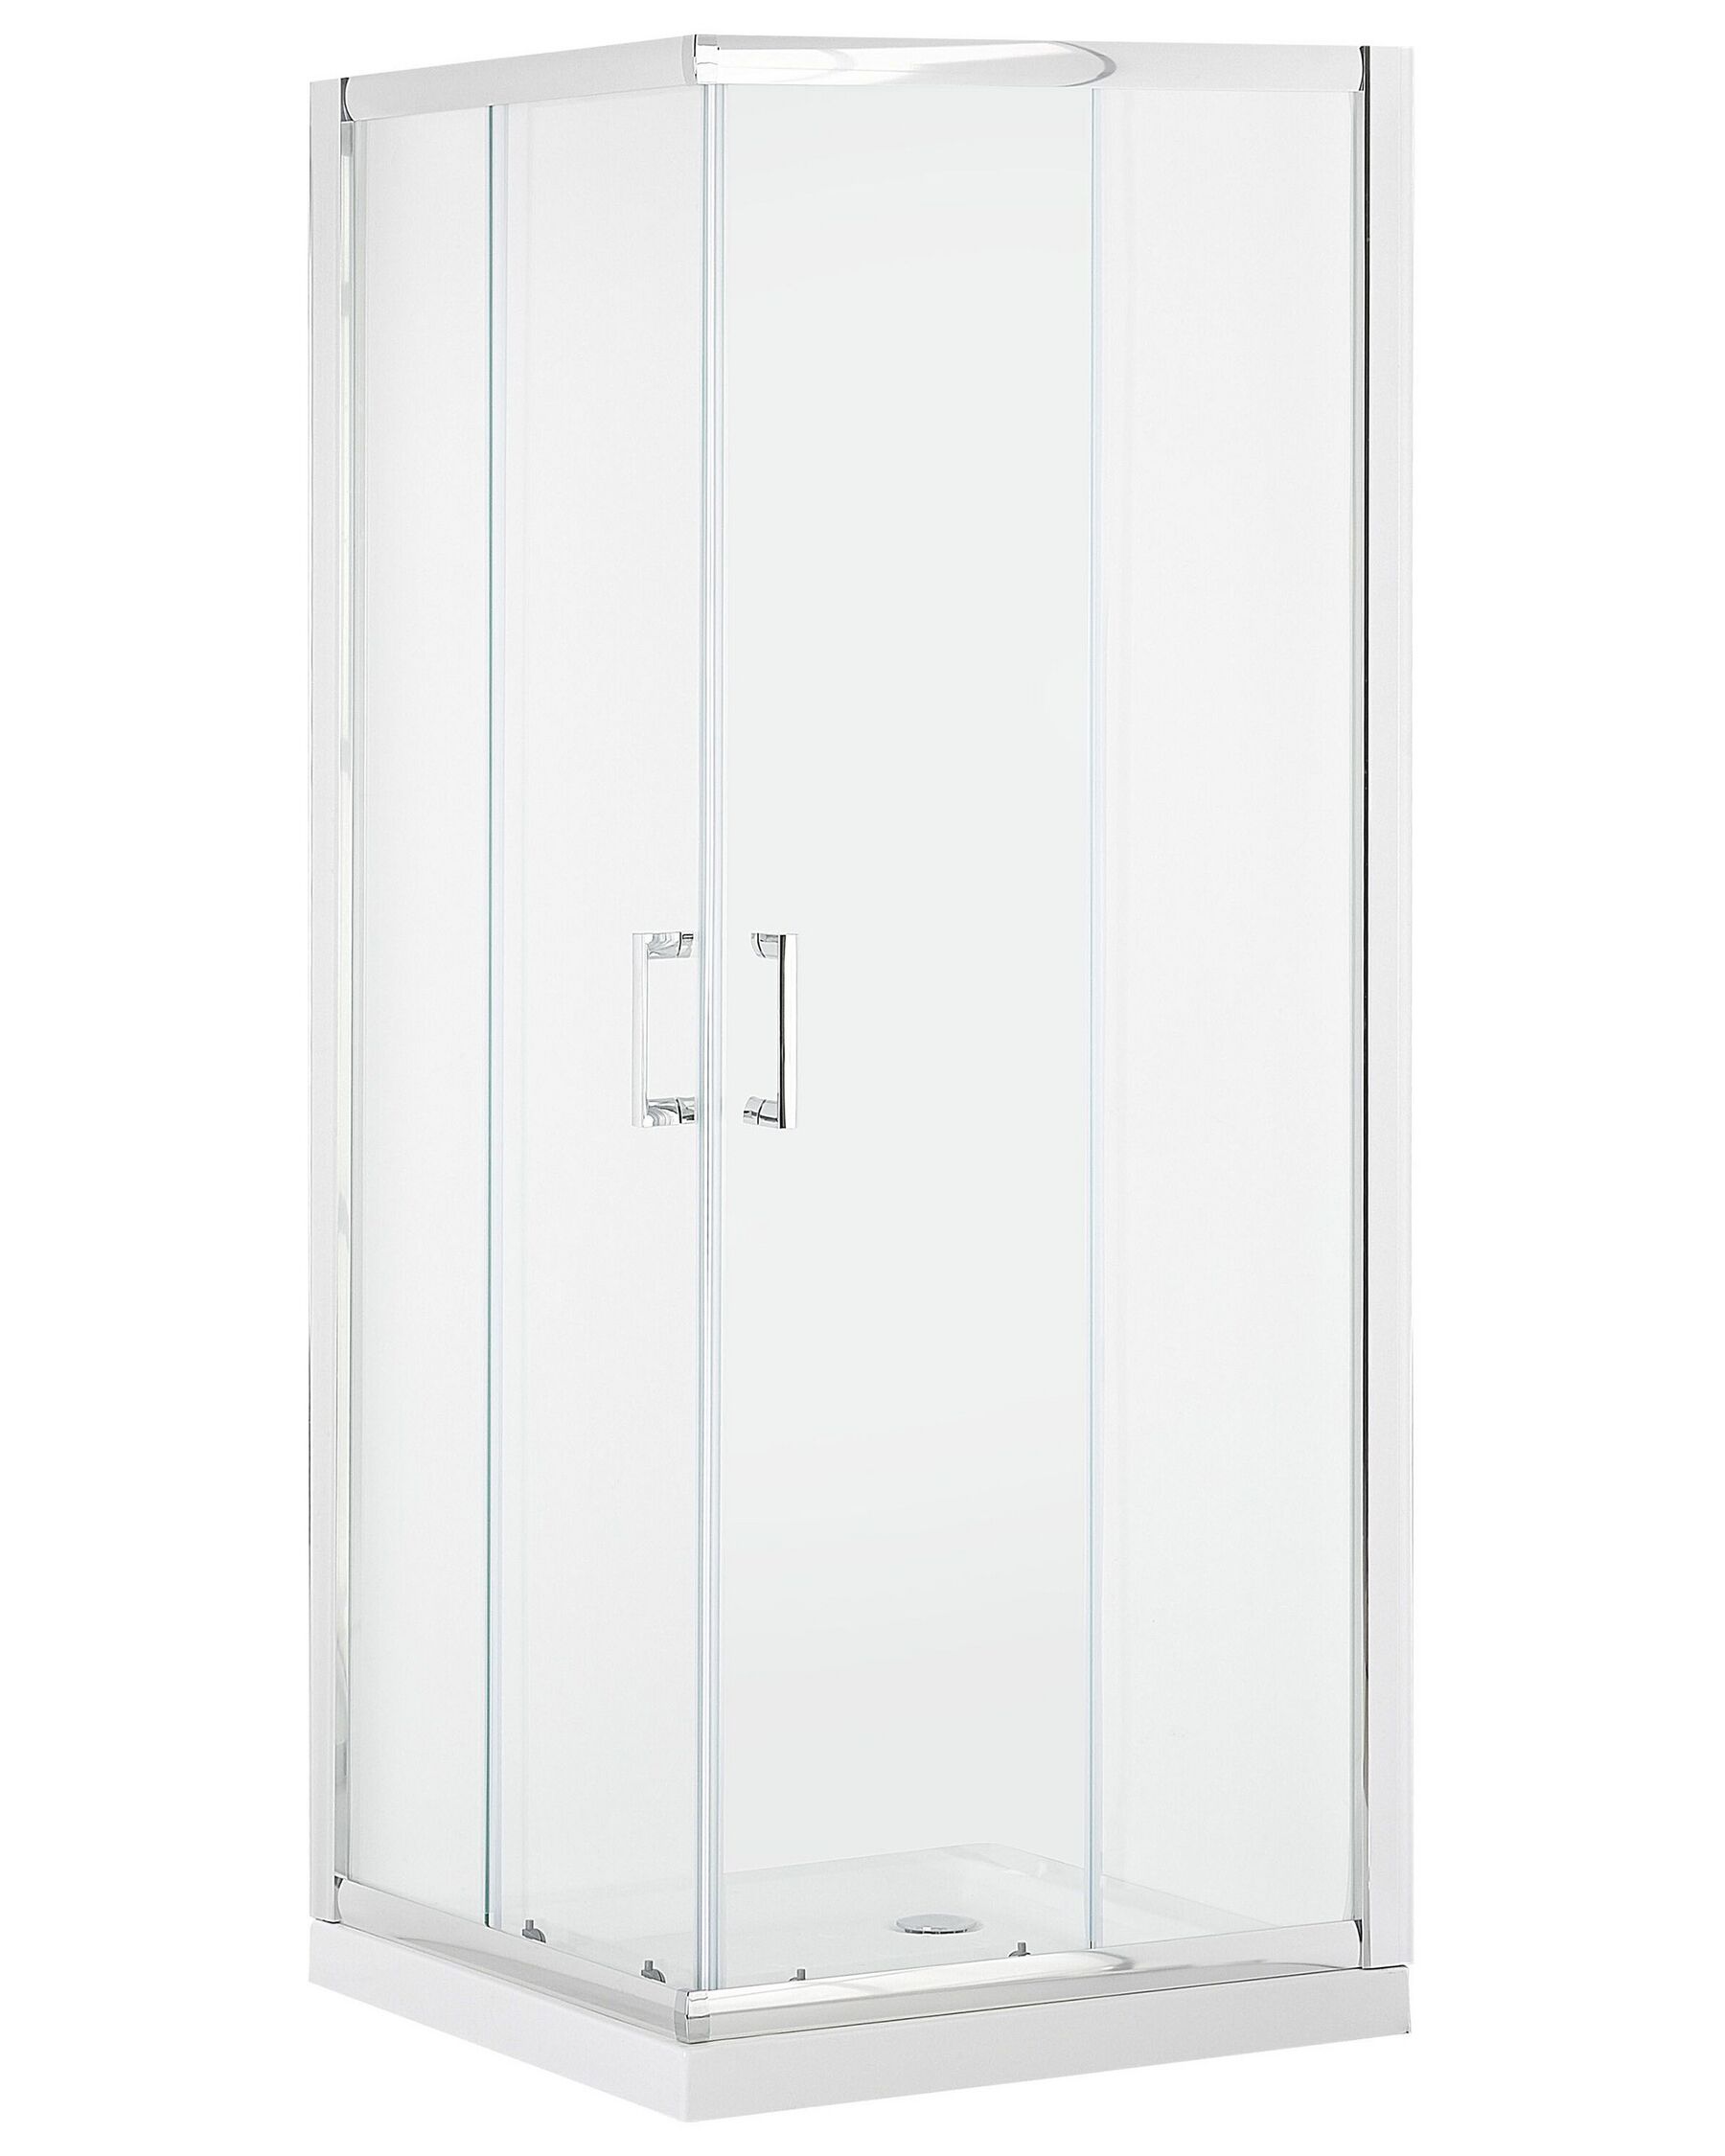 Kabina prysznicowa szkło hartowane 80 x 80 x 185 cm srebrna TELA_787953